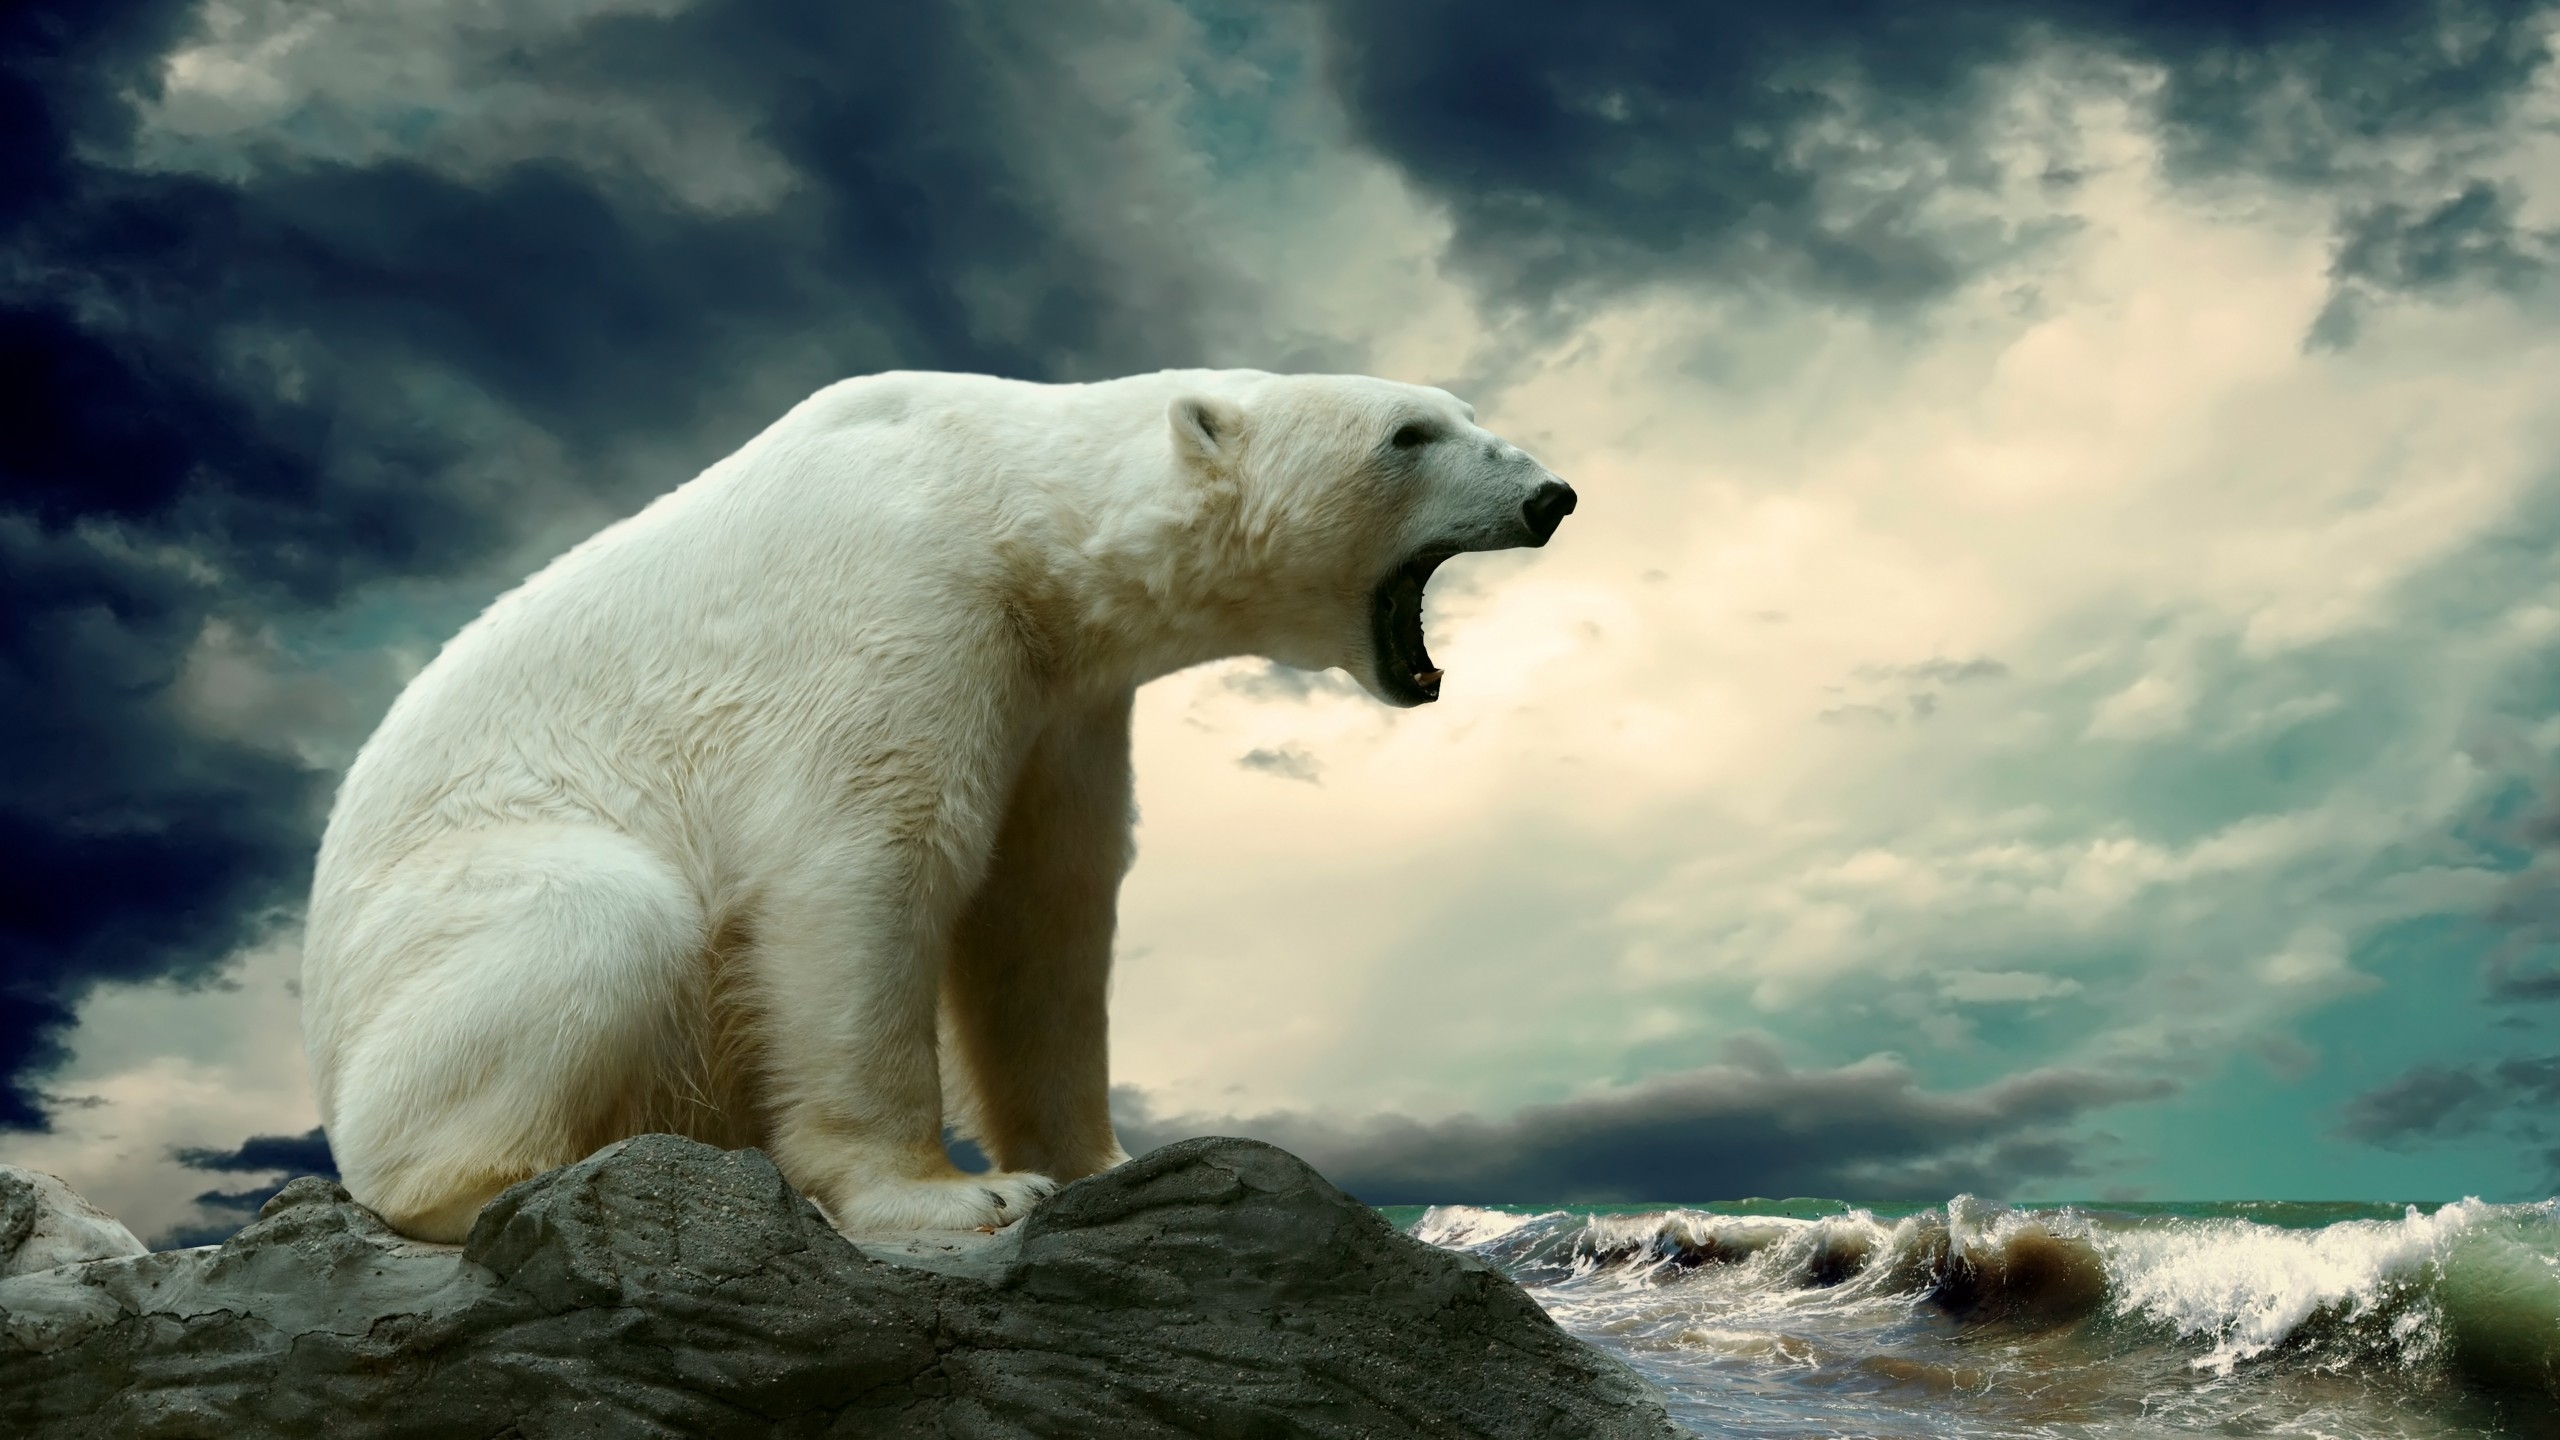 Polar Bear Shouting for 2560x1440 HDTV resolution